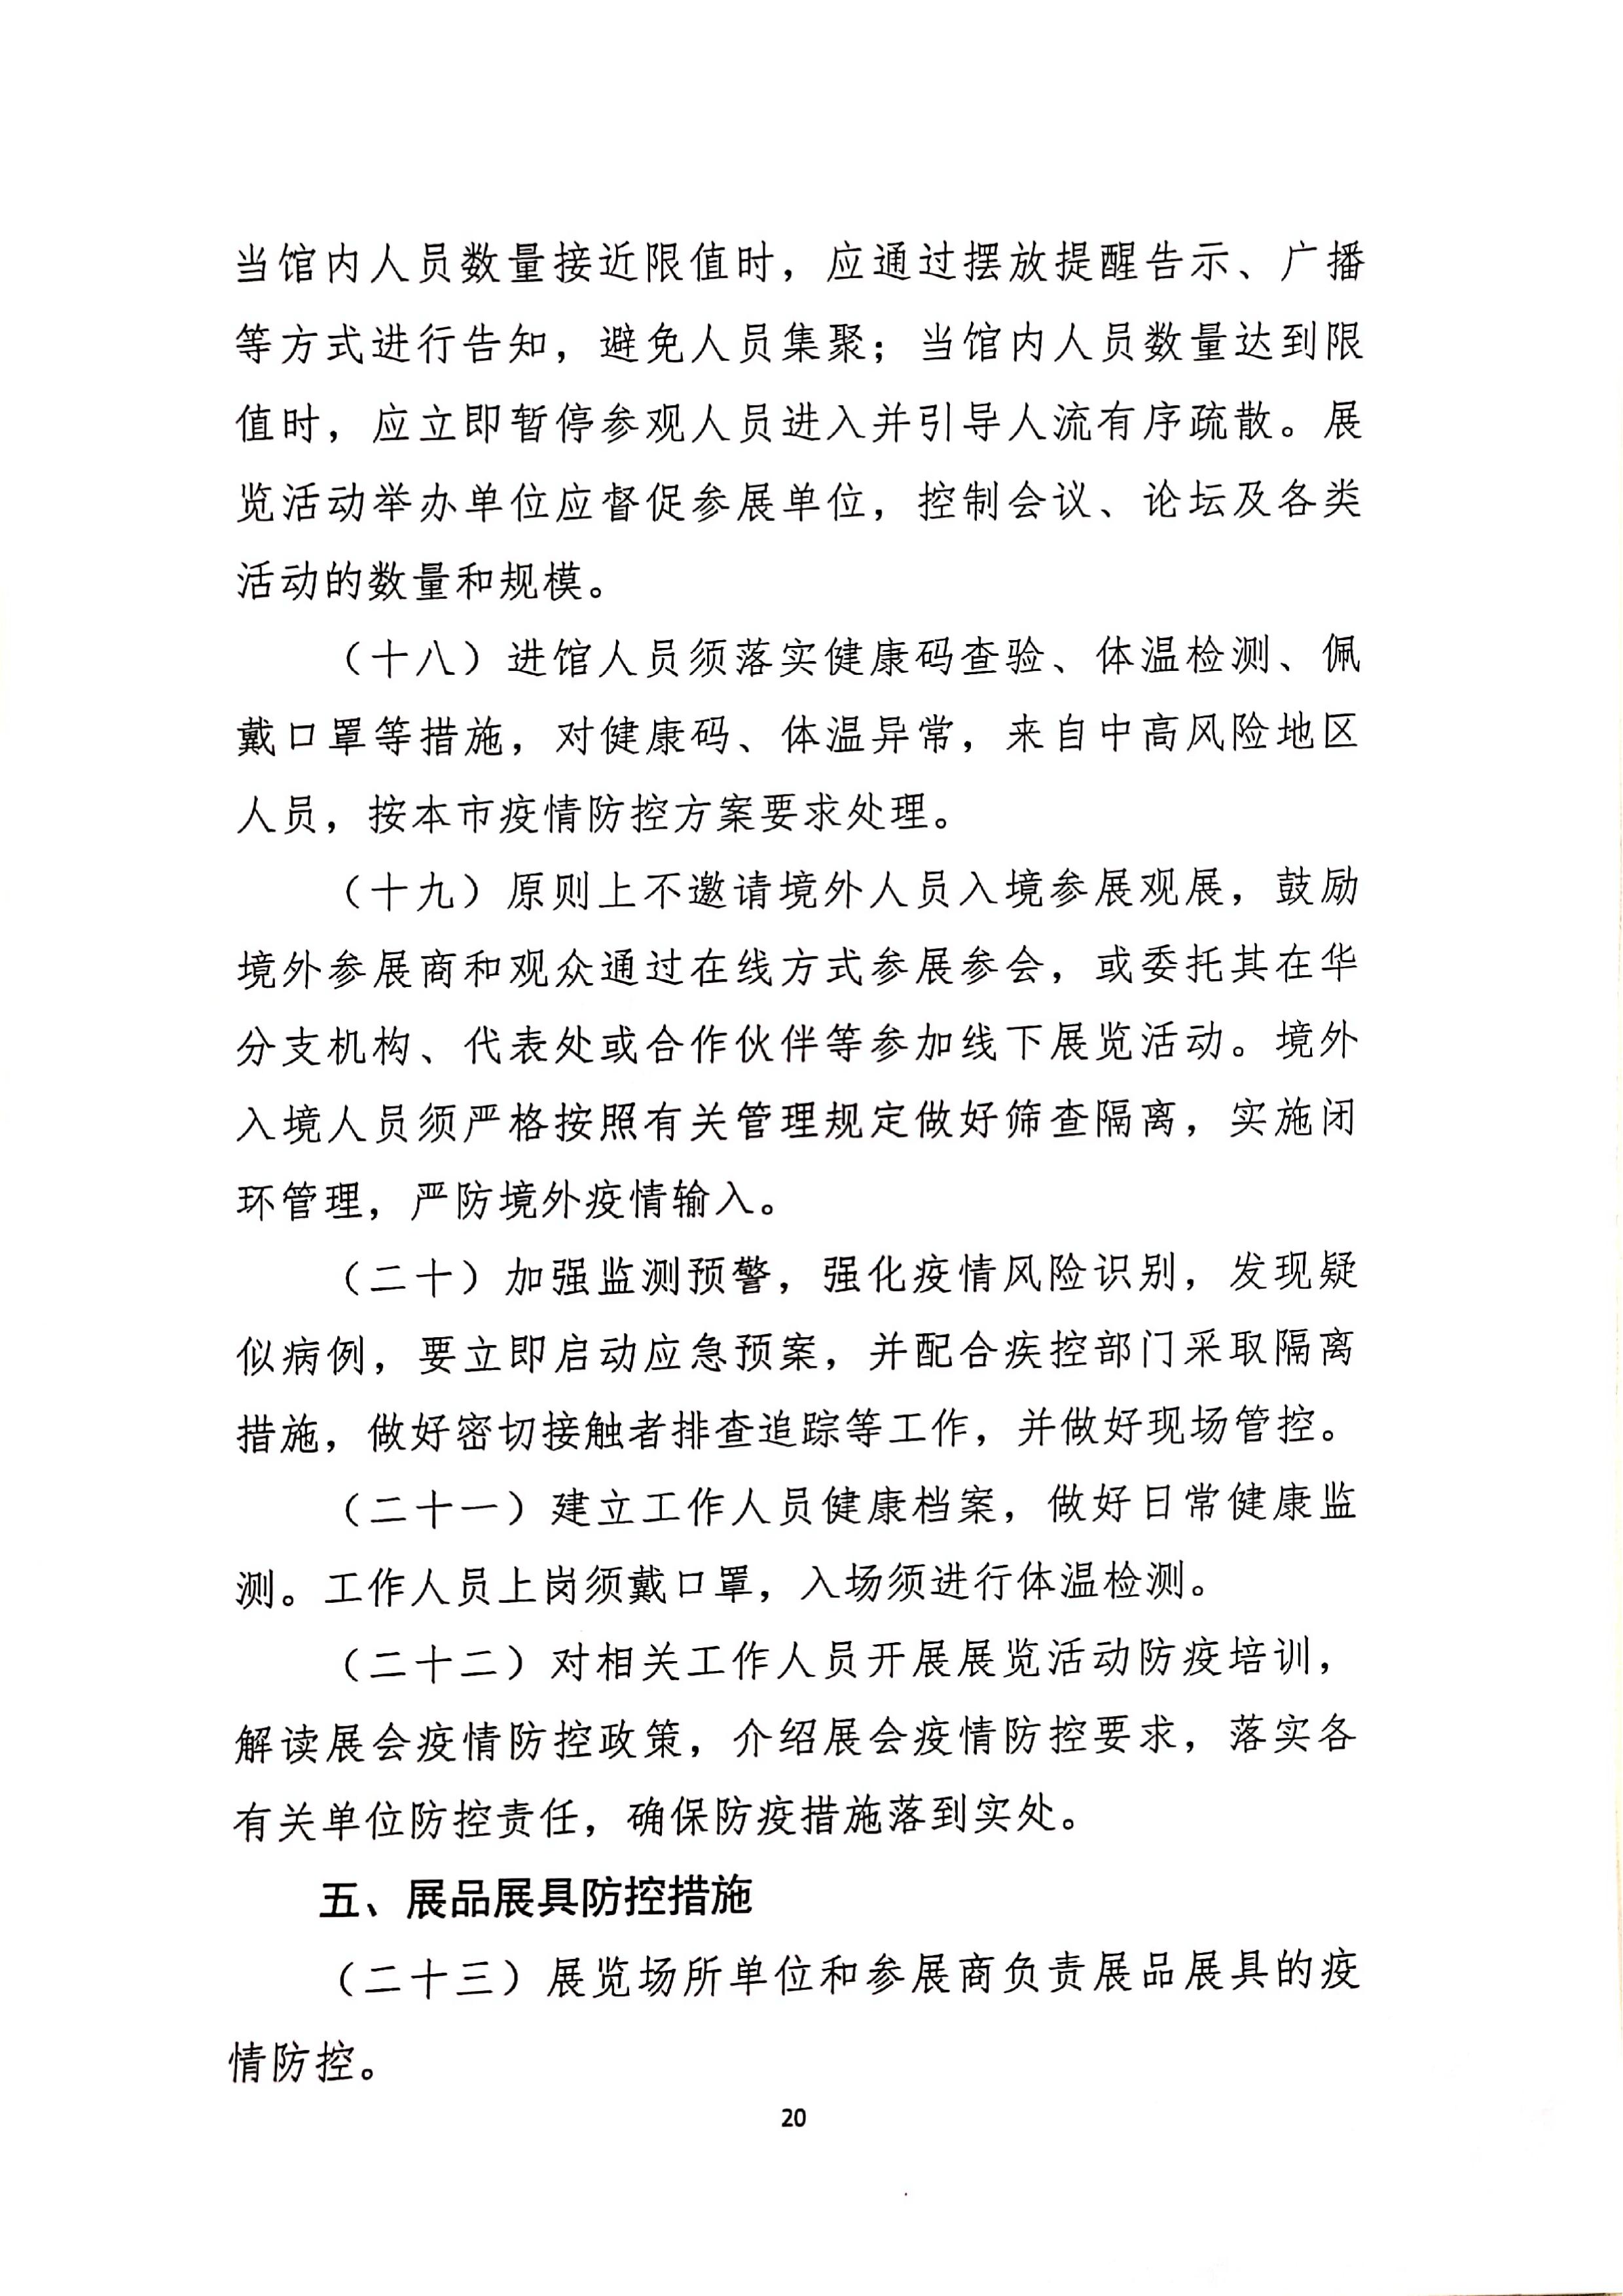 发文4号-关于印发《上海市商场、超市疫情防控技术指南》等4个指南的通知_20.jpg